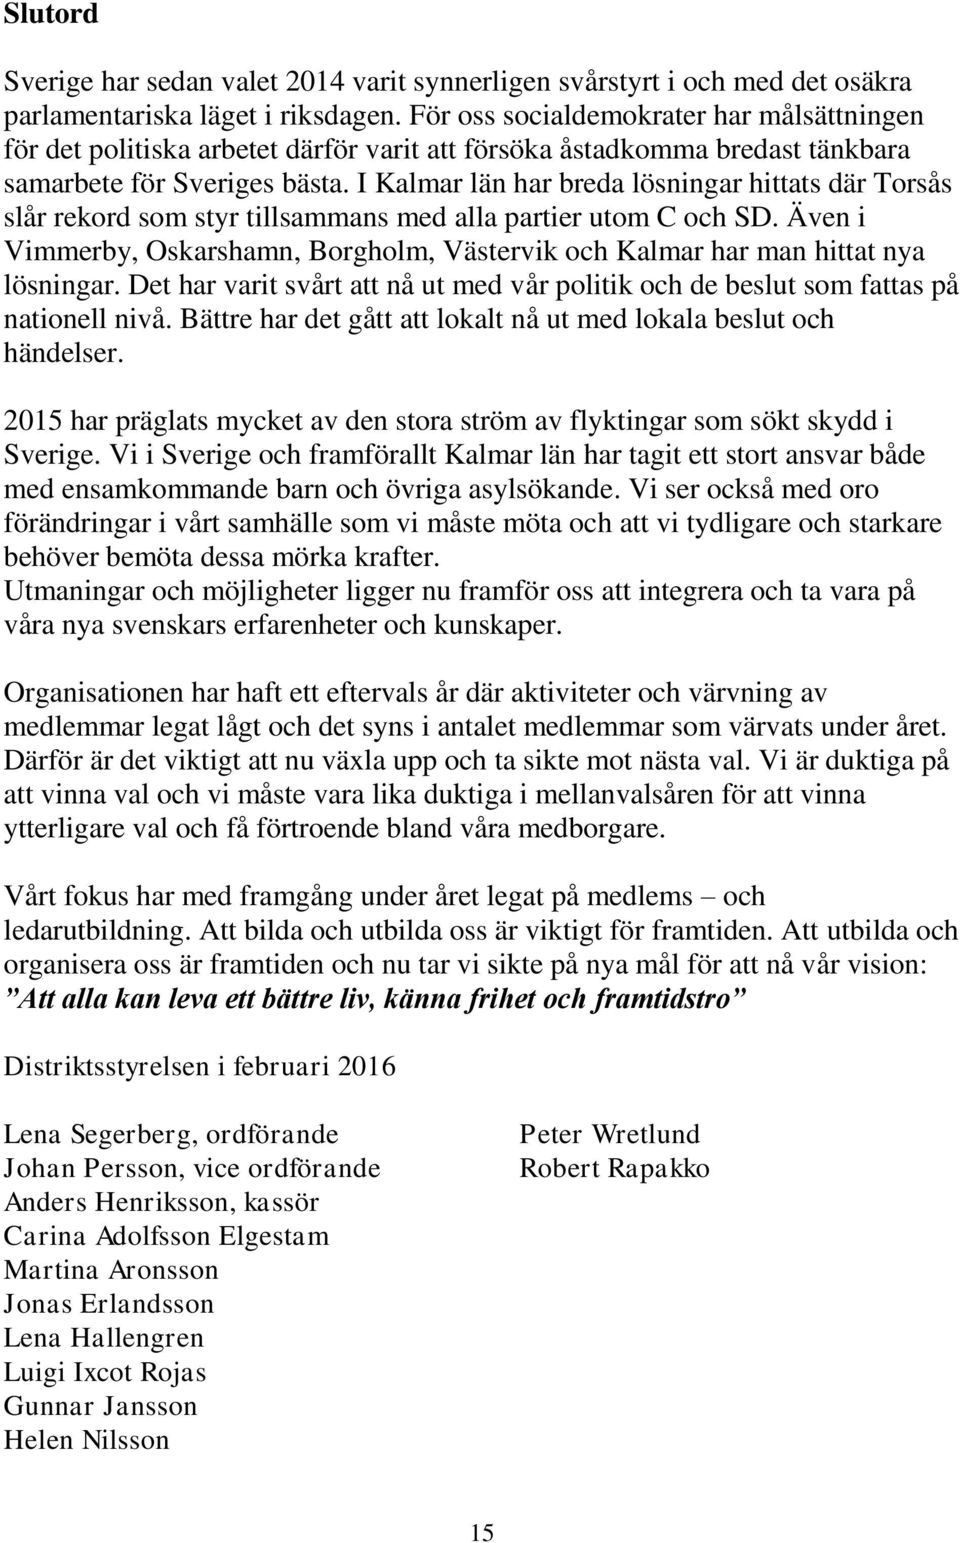 I Kalmar län har breda lösningar hittats där Torsås slår rekord som styr tillsammans med alla partier utom C och SD.